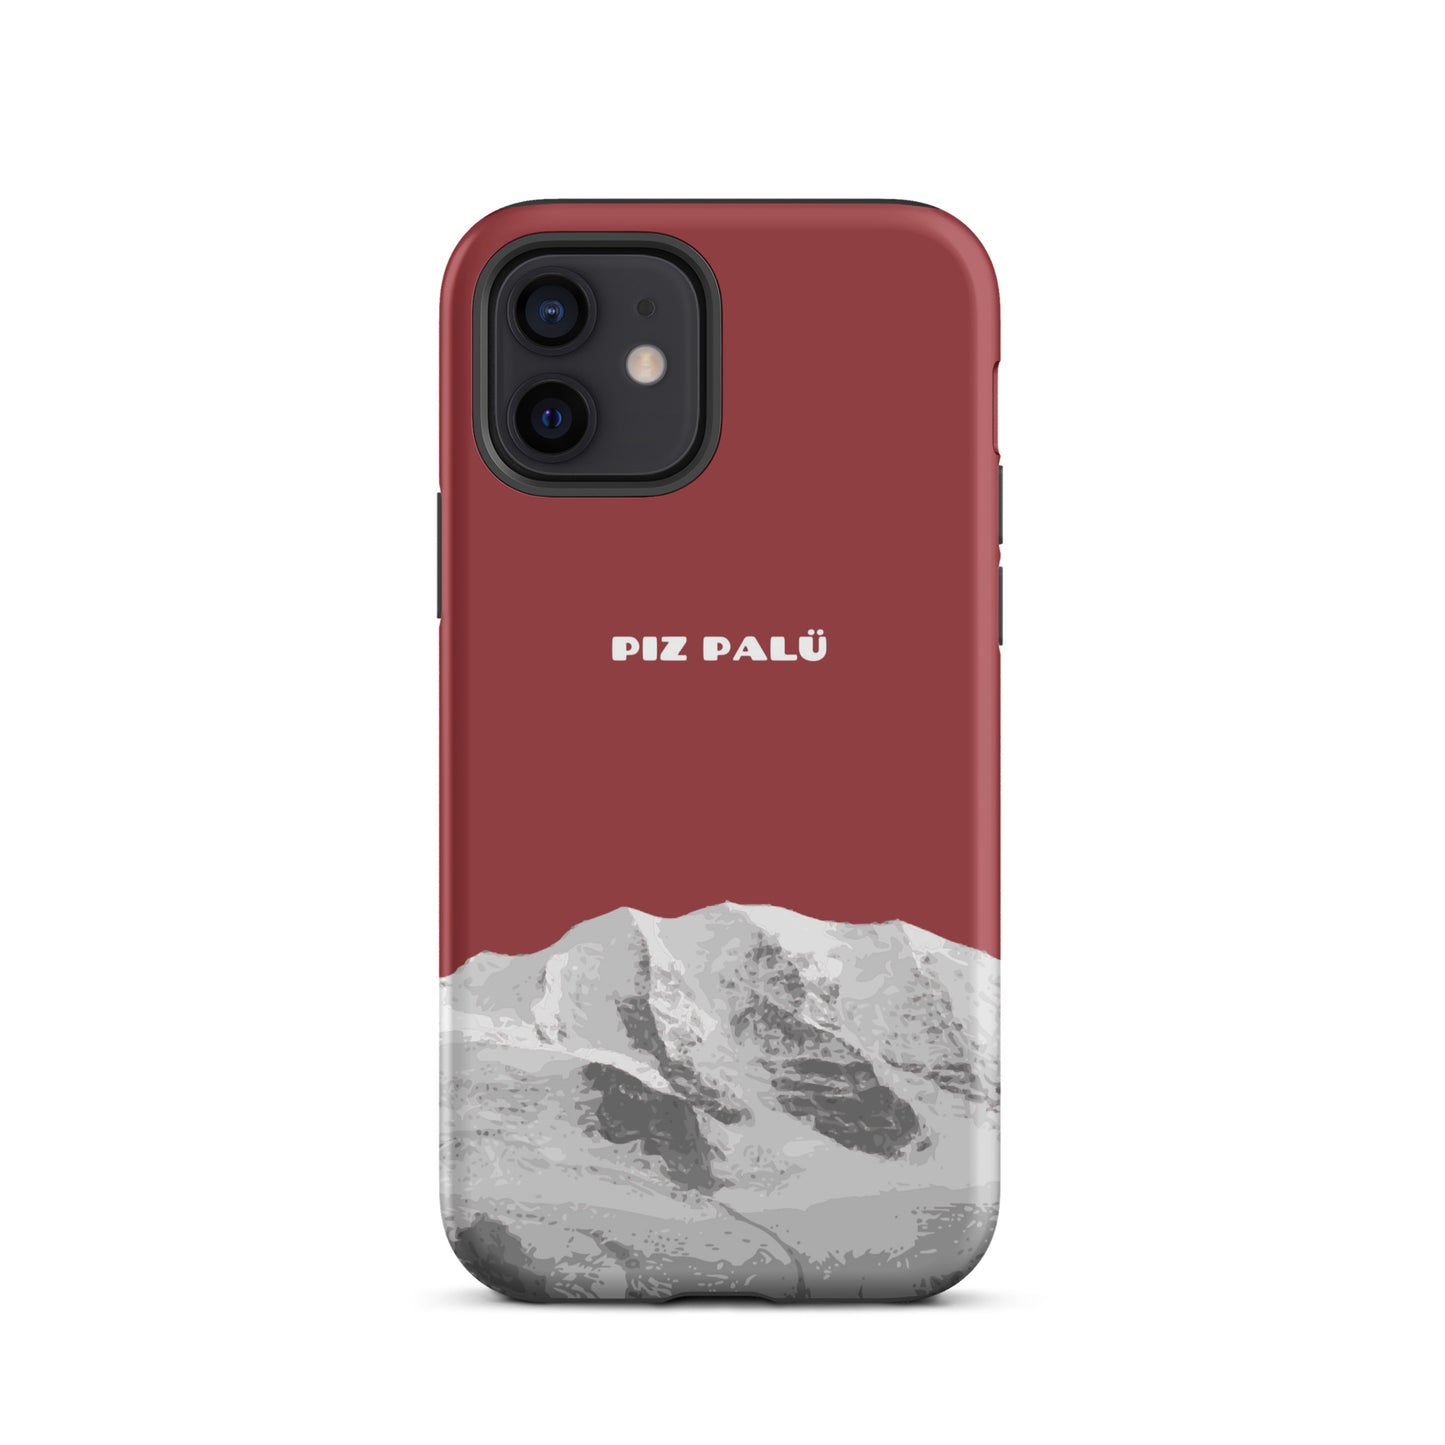 Hülle für das iPhone 12 von Apple in der Farbe Rot, dass den Piz Palü in Graubünden zeigt.